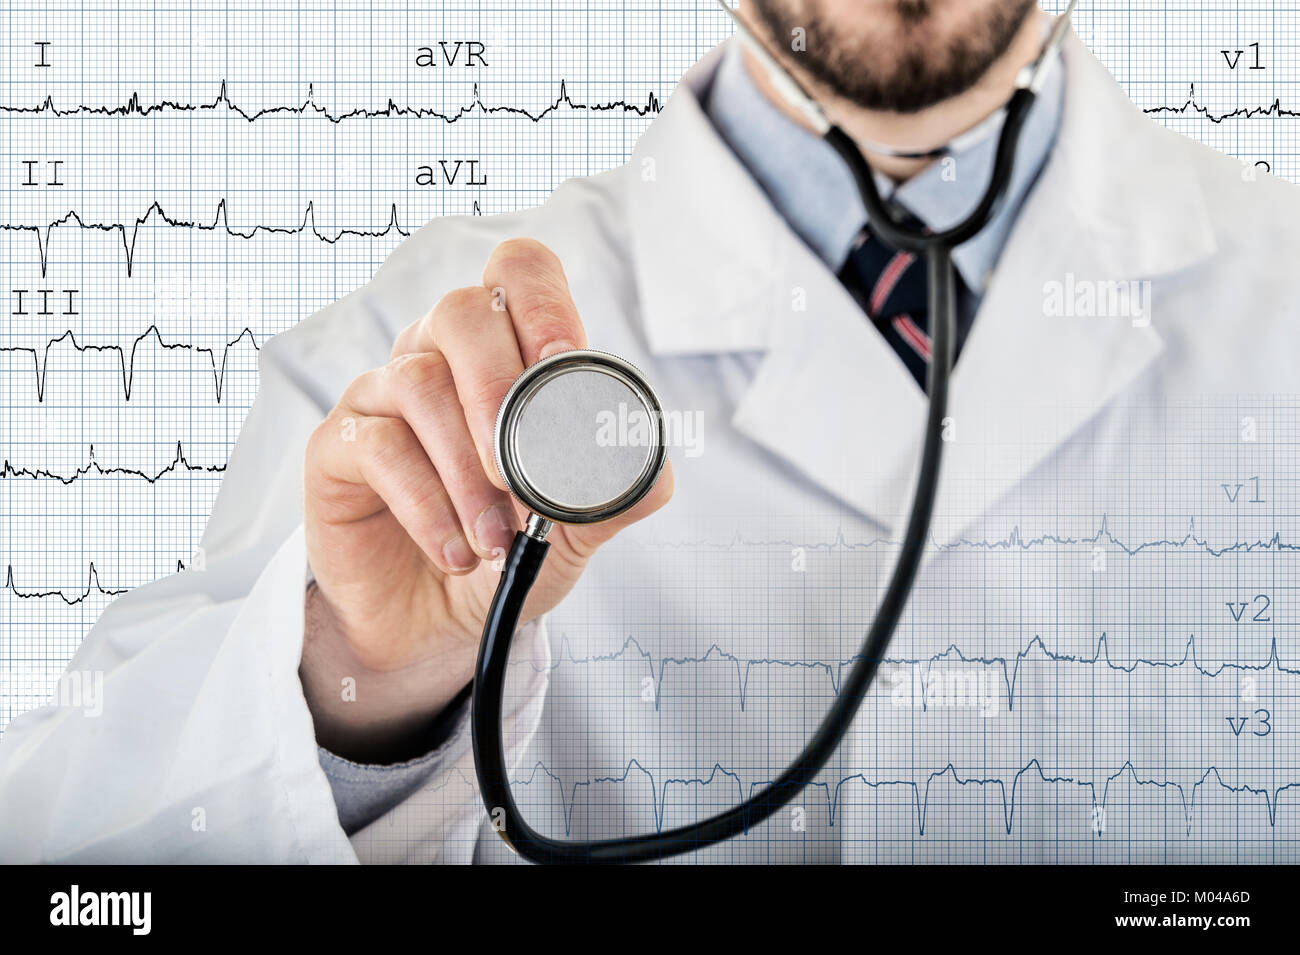 Médecin cardiologue mâle montrant stéthoscope checkup avec électrocardiogramme en arrière-plan Banque D'Images